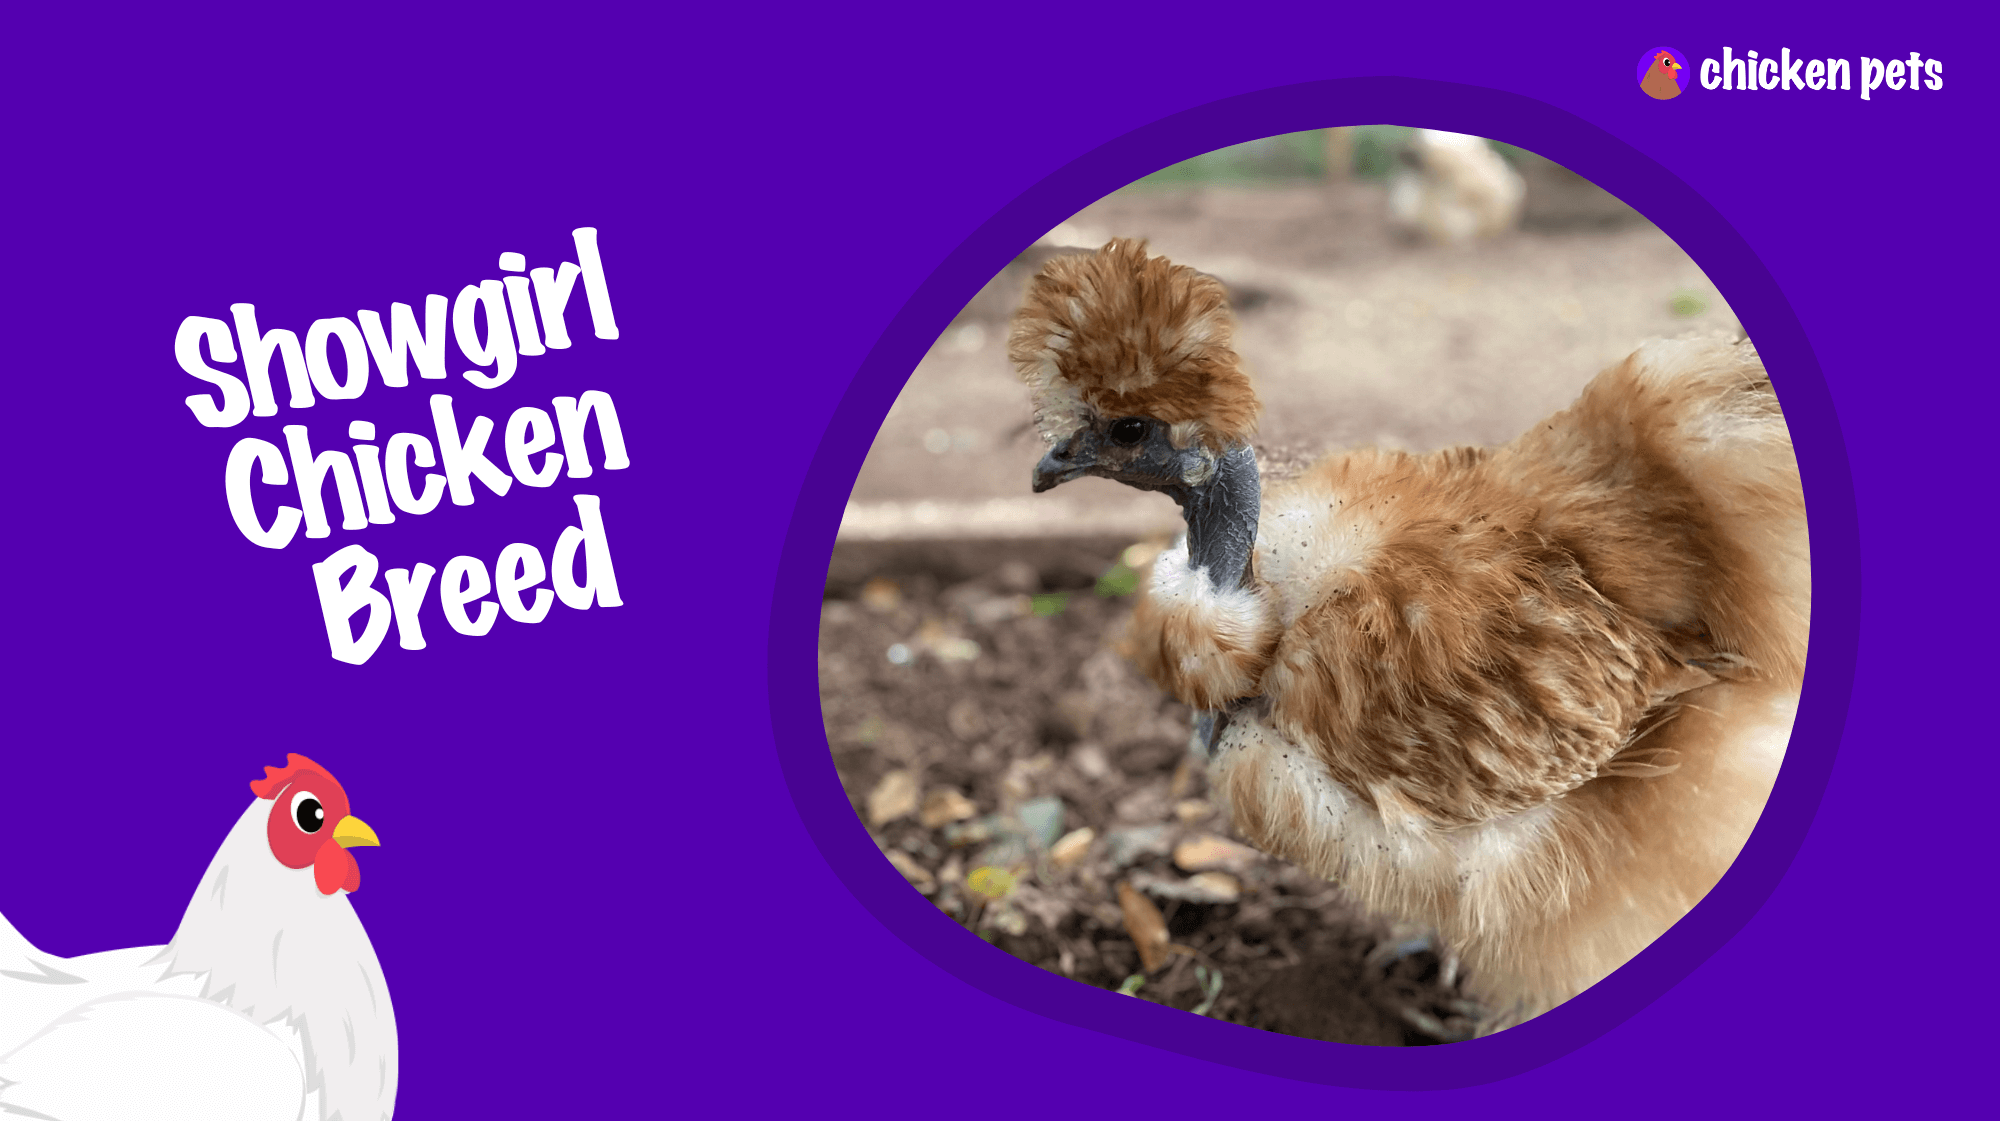 showgirl chicken breed